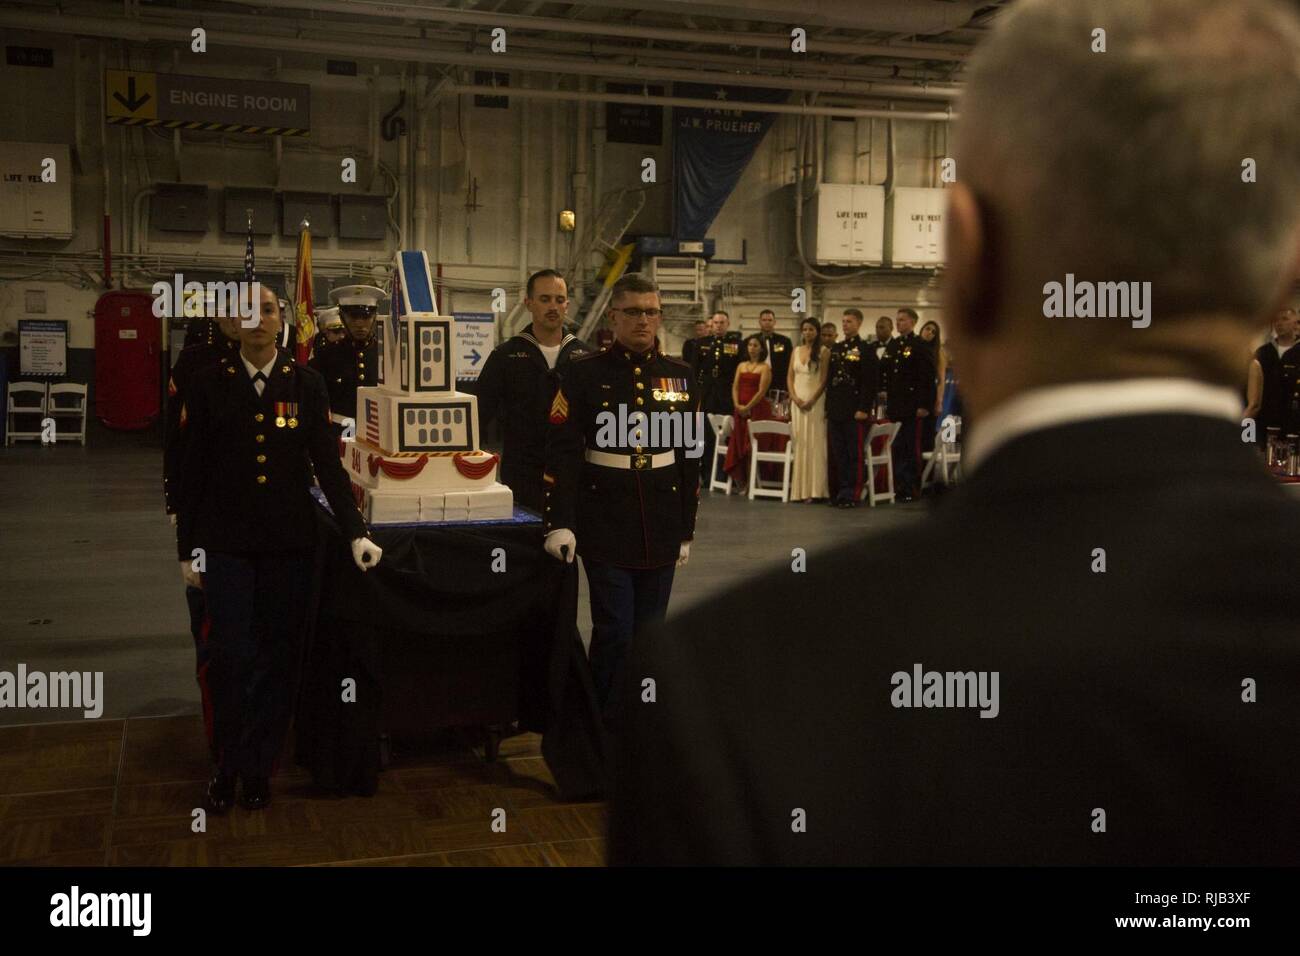 Cuerpo de Marines de EE.UU Gen. (Ret.) James Mattis, derecha, asiste como invitado de honor durante la 1ª Divisiones (Marina) MARDIV 241Marine Corps cumpleaños bola al USS Midway (CV-41), portaaviones el 3 de noviembre, 2016. El personal de suboficiales y oficiales de la 1ª MARDIV reunidos en el USS Midway (CV-41) Museo conmemorativo de la Infantería de Marina de los EE.UU 241ª Cumpleaños Bola. La primera MARDIV es el más decorado en toda la unidad de infantería de marina están involucrados en todos los conflictos desde la Batalla de Belleau Wood a día de las operaciones actuales. Foto de stock